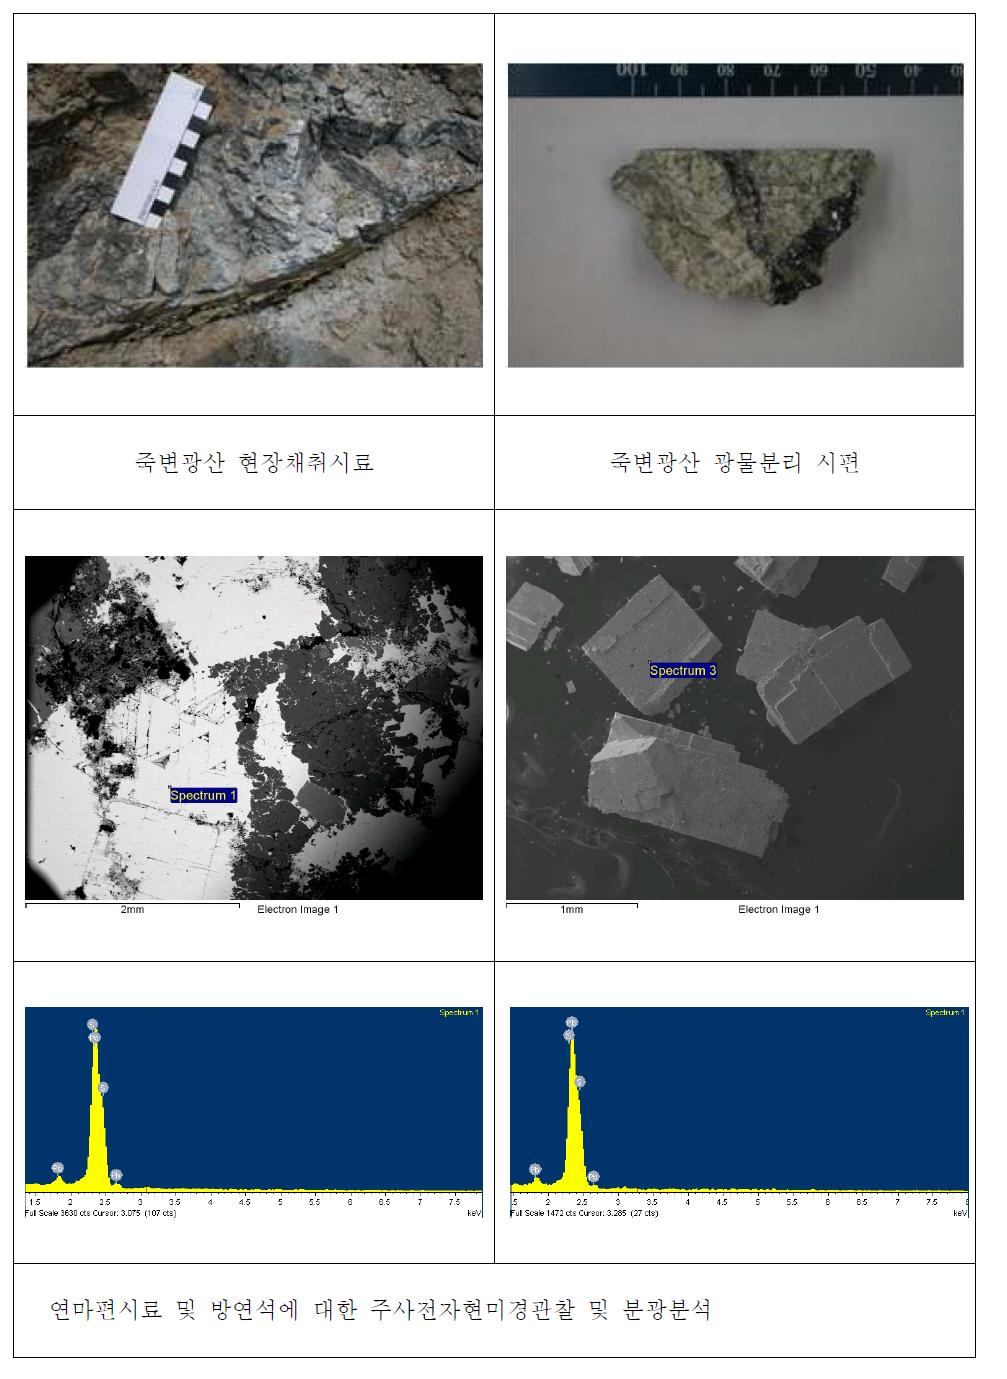 죽변광산 연마편시료 및 방연석시료의 주사전자현미경관찰 및 분광분석